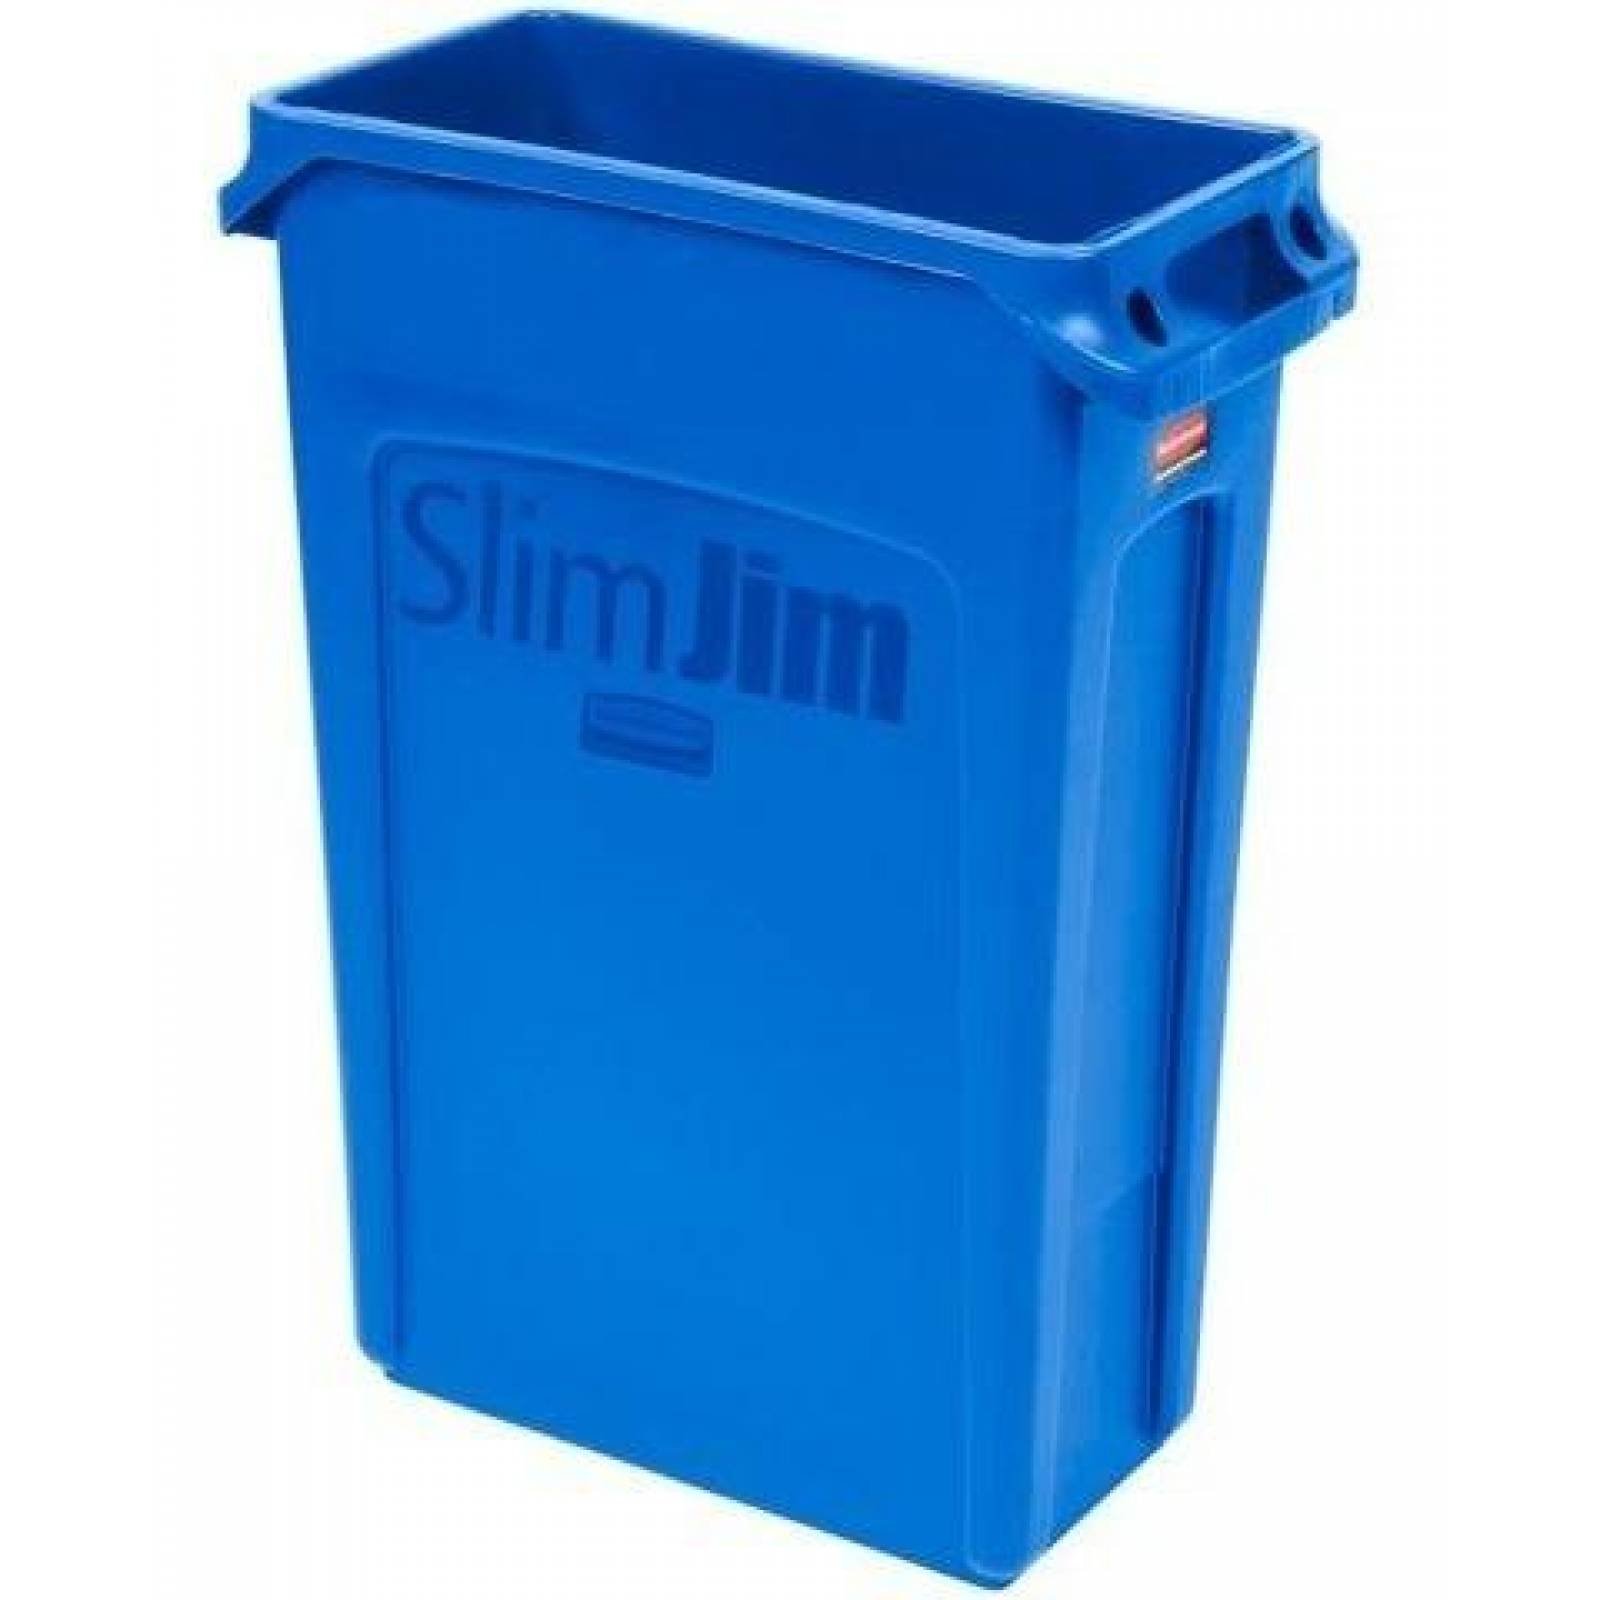 Contenedor Slim Jim C/canales De Vent. Azul Rubbermaid 